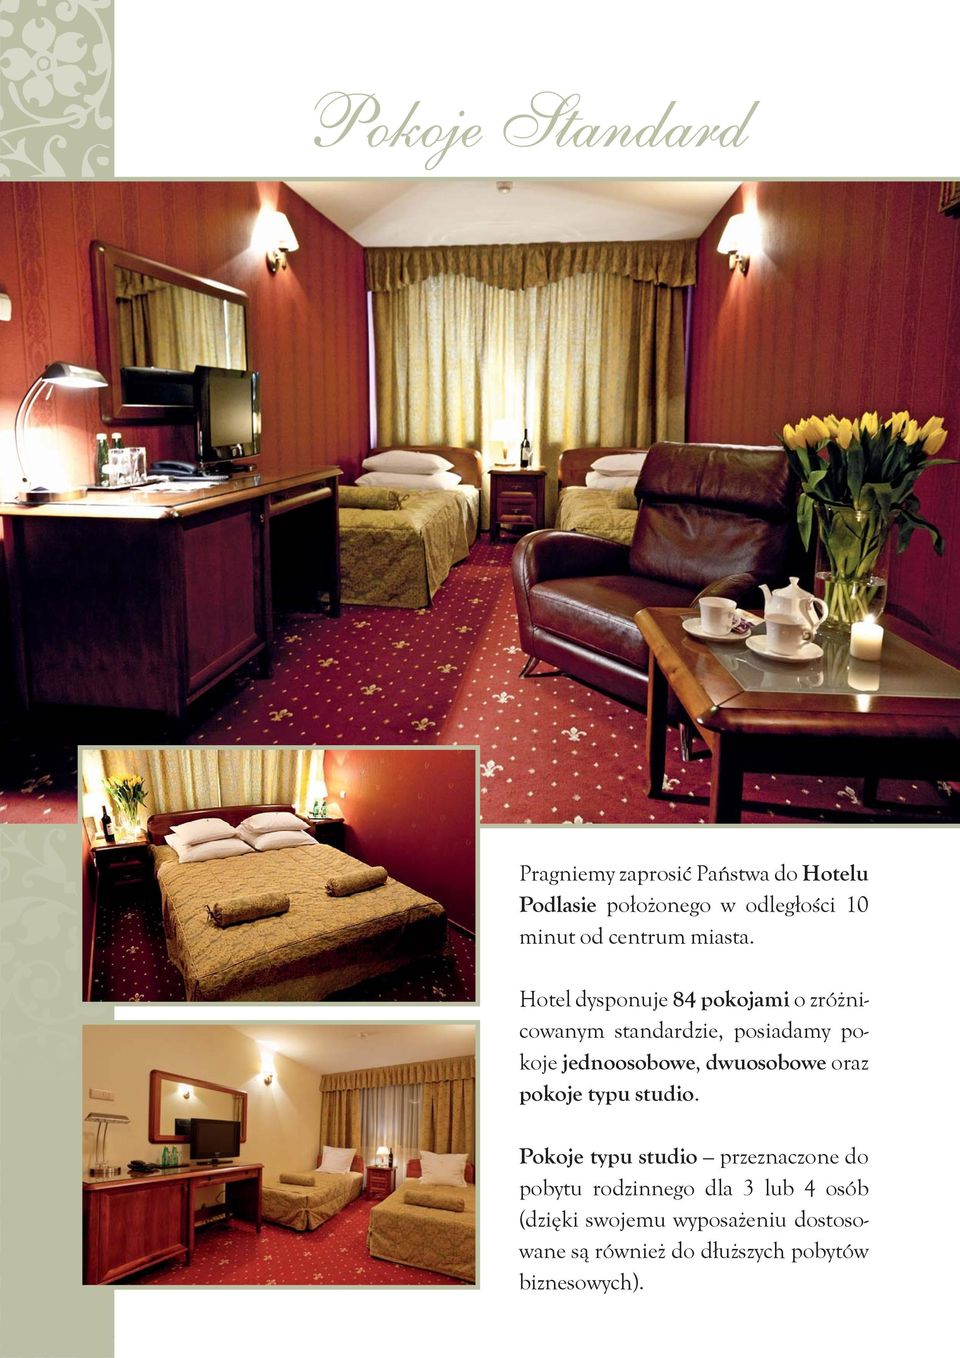 Hotel dysponuje 84 pokojami o zróżnicowanym standardzie, posiadamy pokoje jednoosobowe,